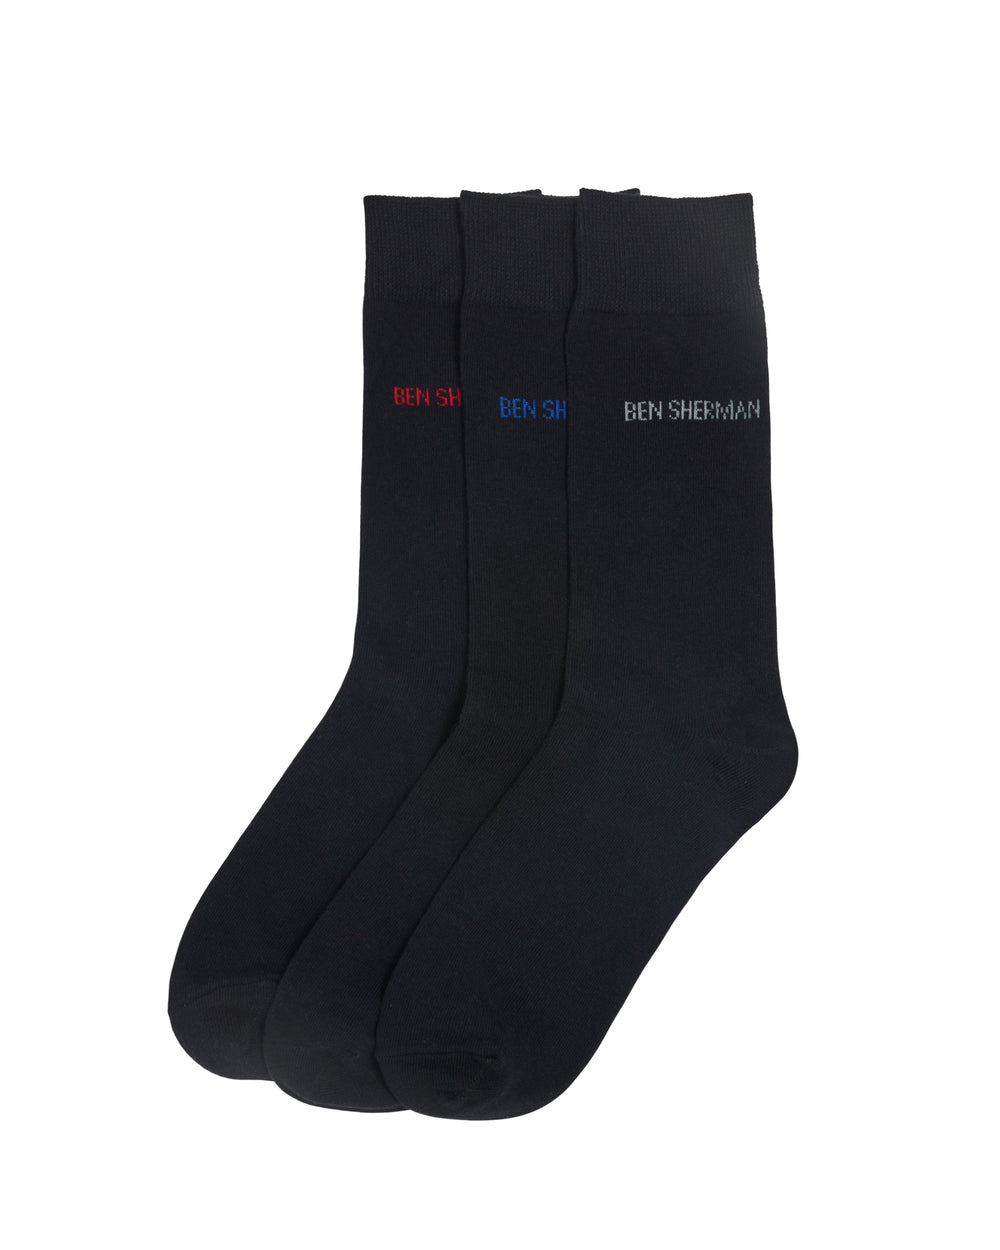 Hedgehunter Men's 3-Pack Socks - Black